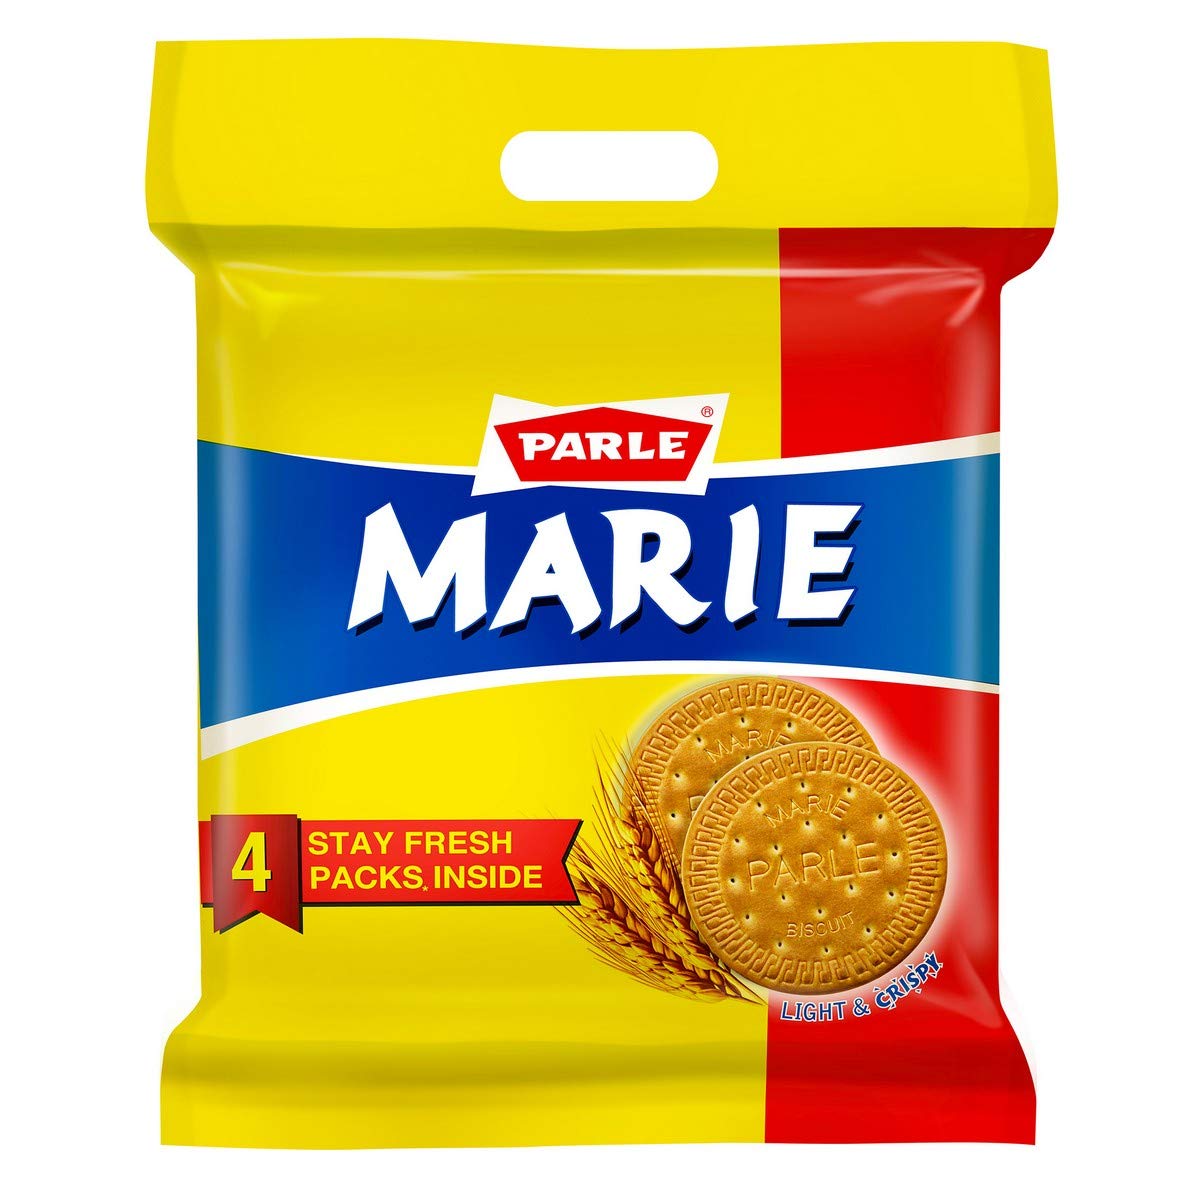 Parle Marie Biscuit 800g BUY  1 GET 1 FREE